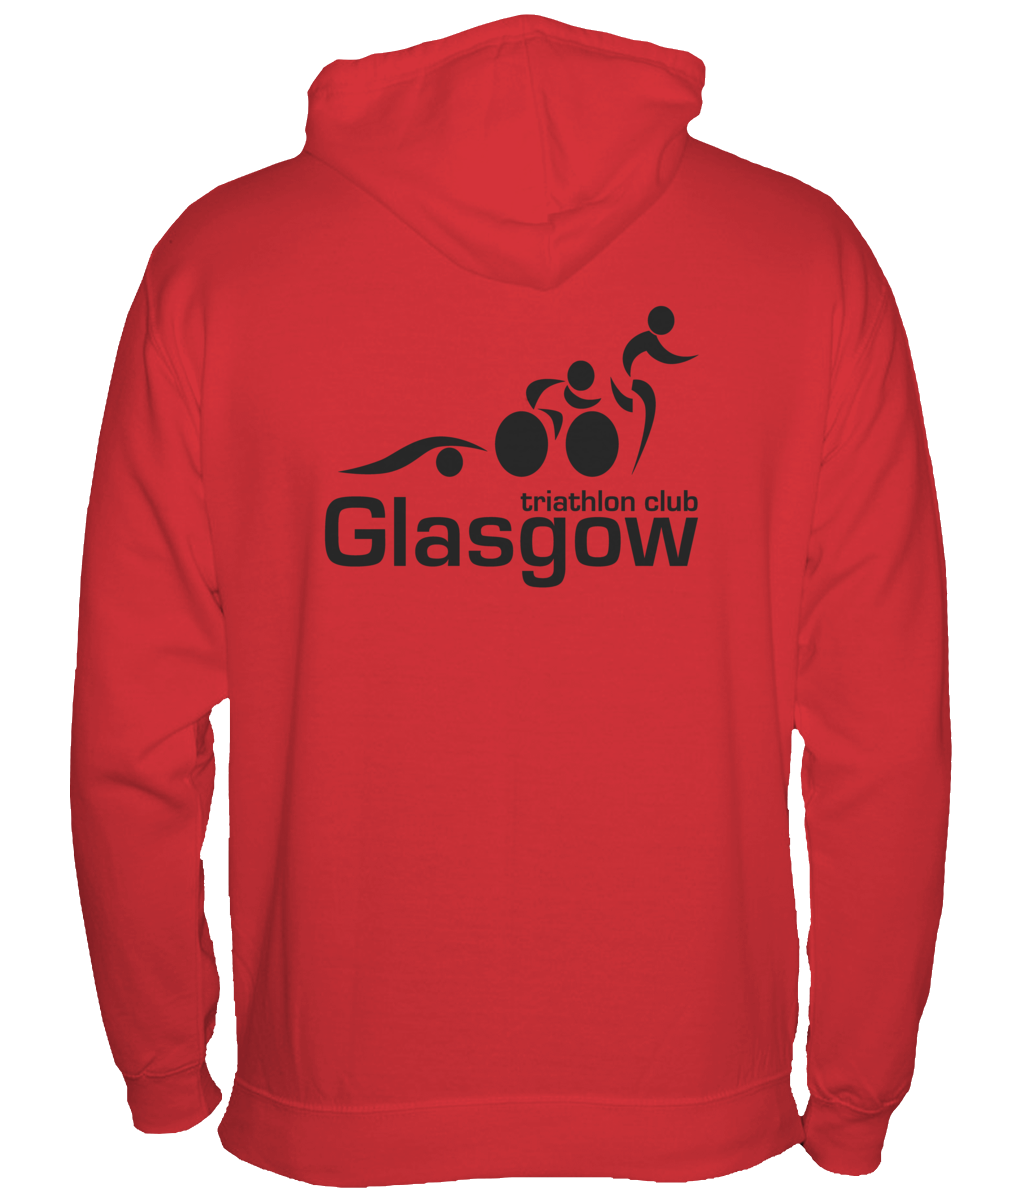 Glasgow Triathlon Club - Basic Red Hoodie